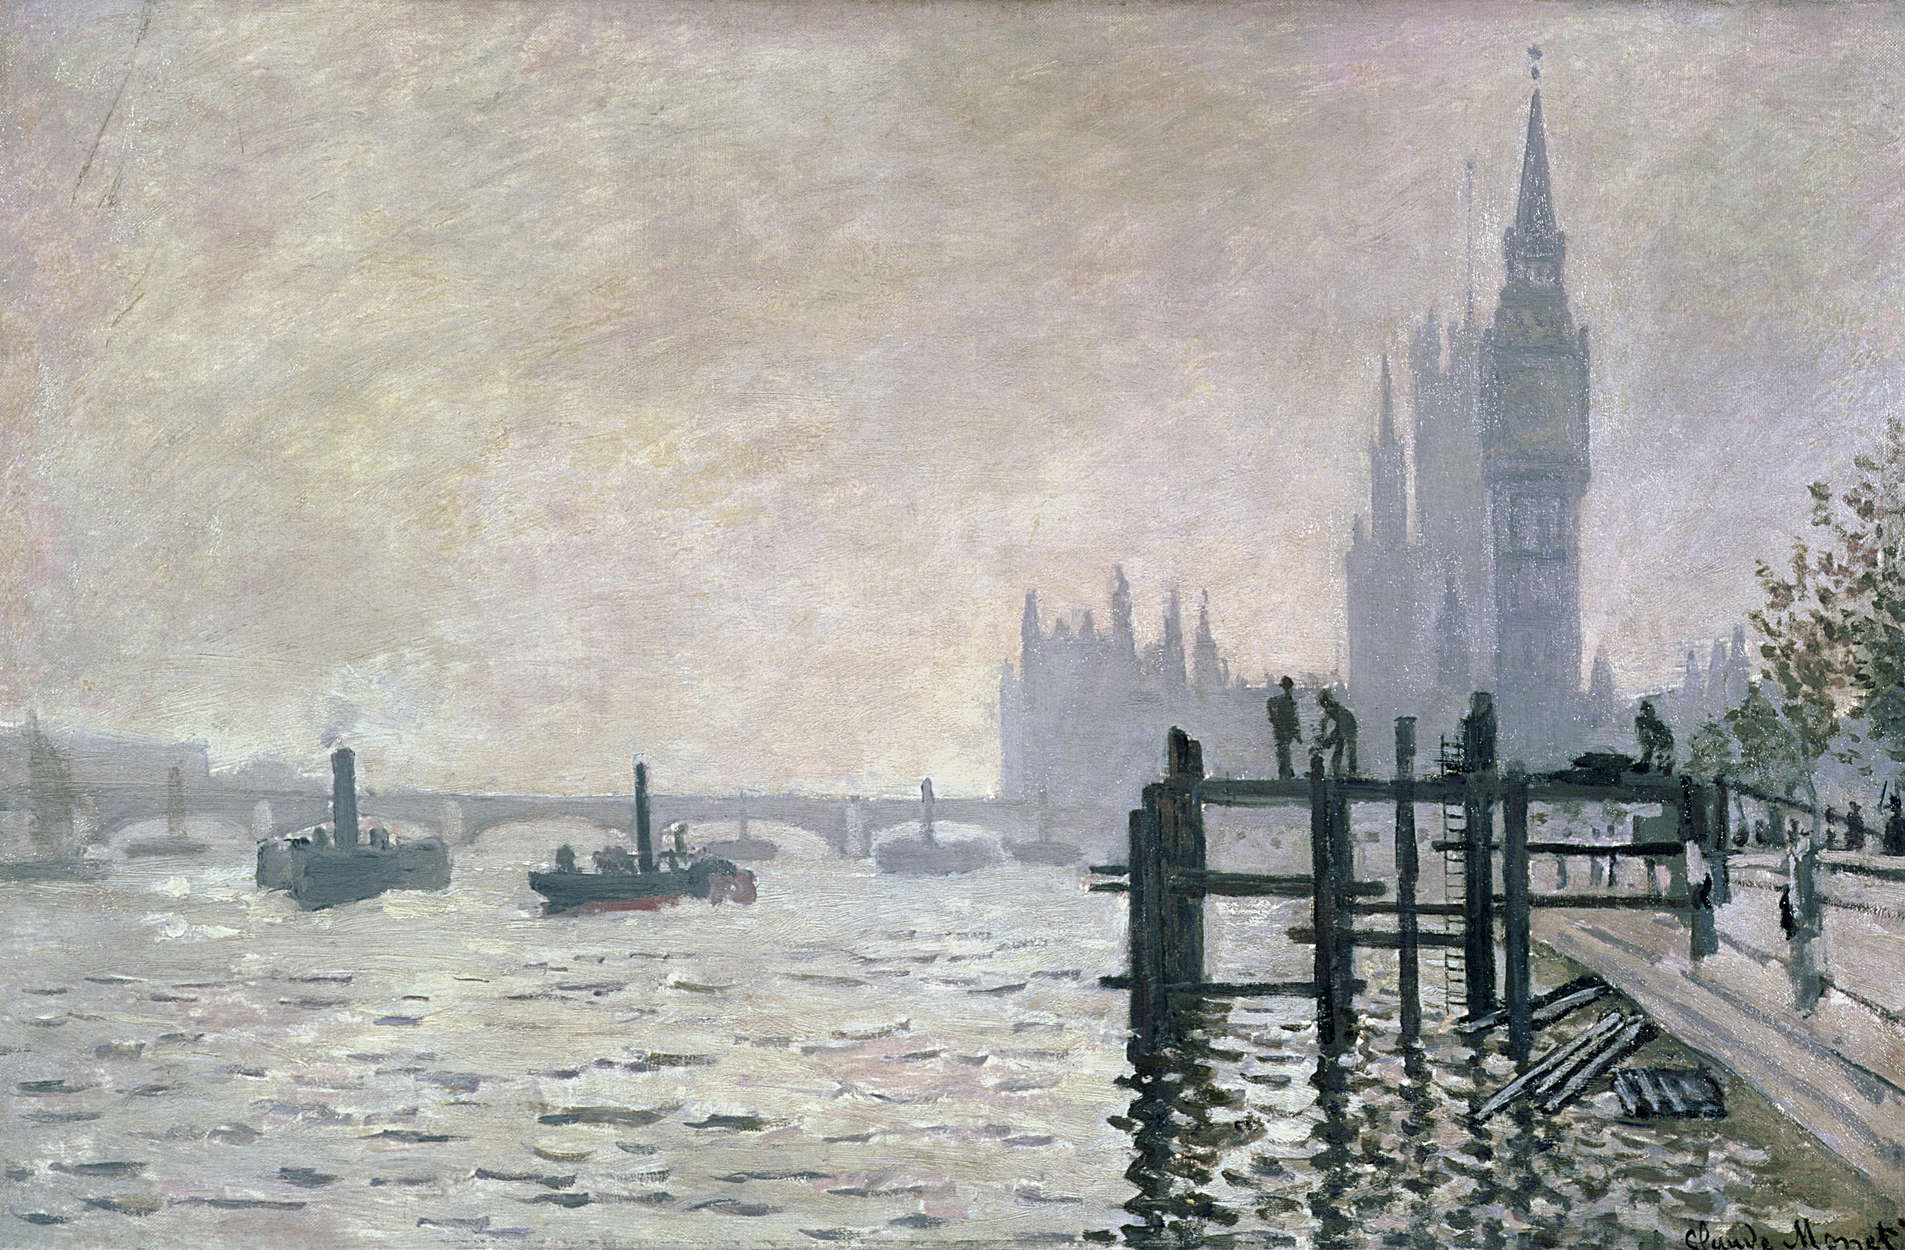             Mural "El Támesis bajo Westminster" de Claude Monet
        